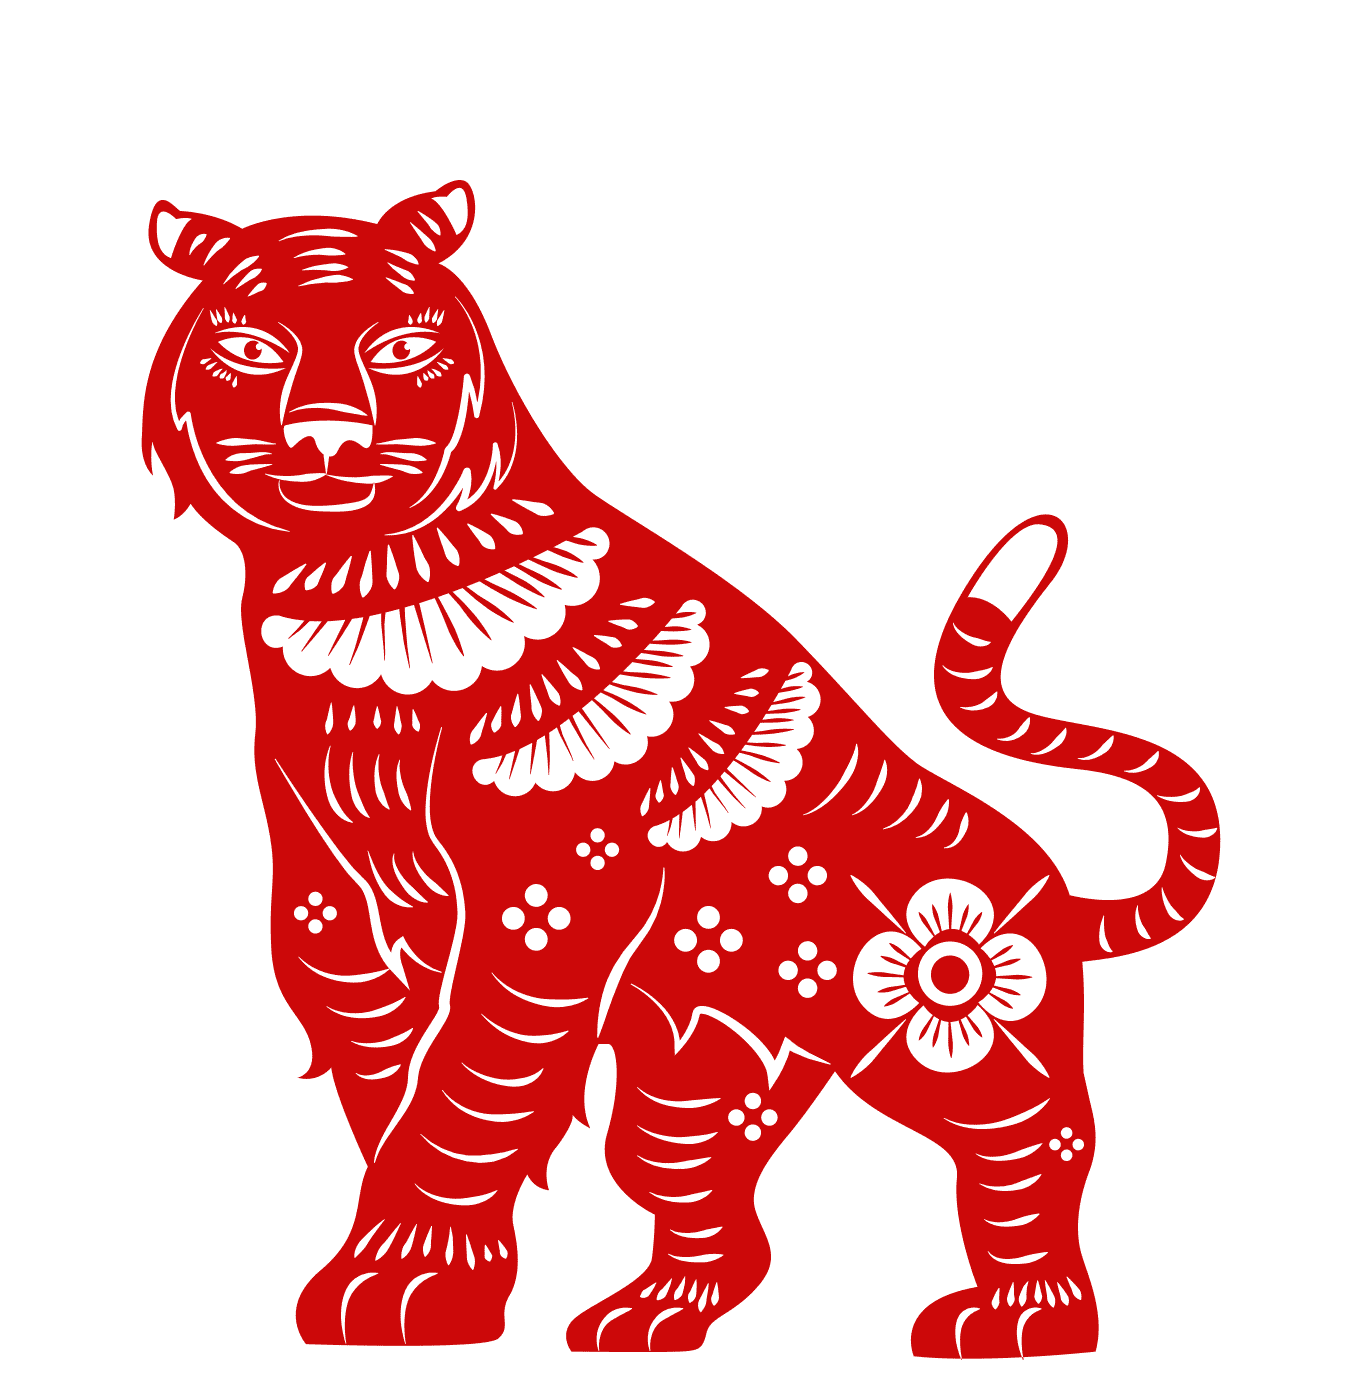 Signo del Año del Tigre || Fuente: Shutterstock